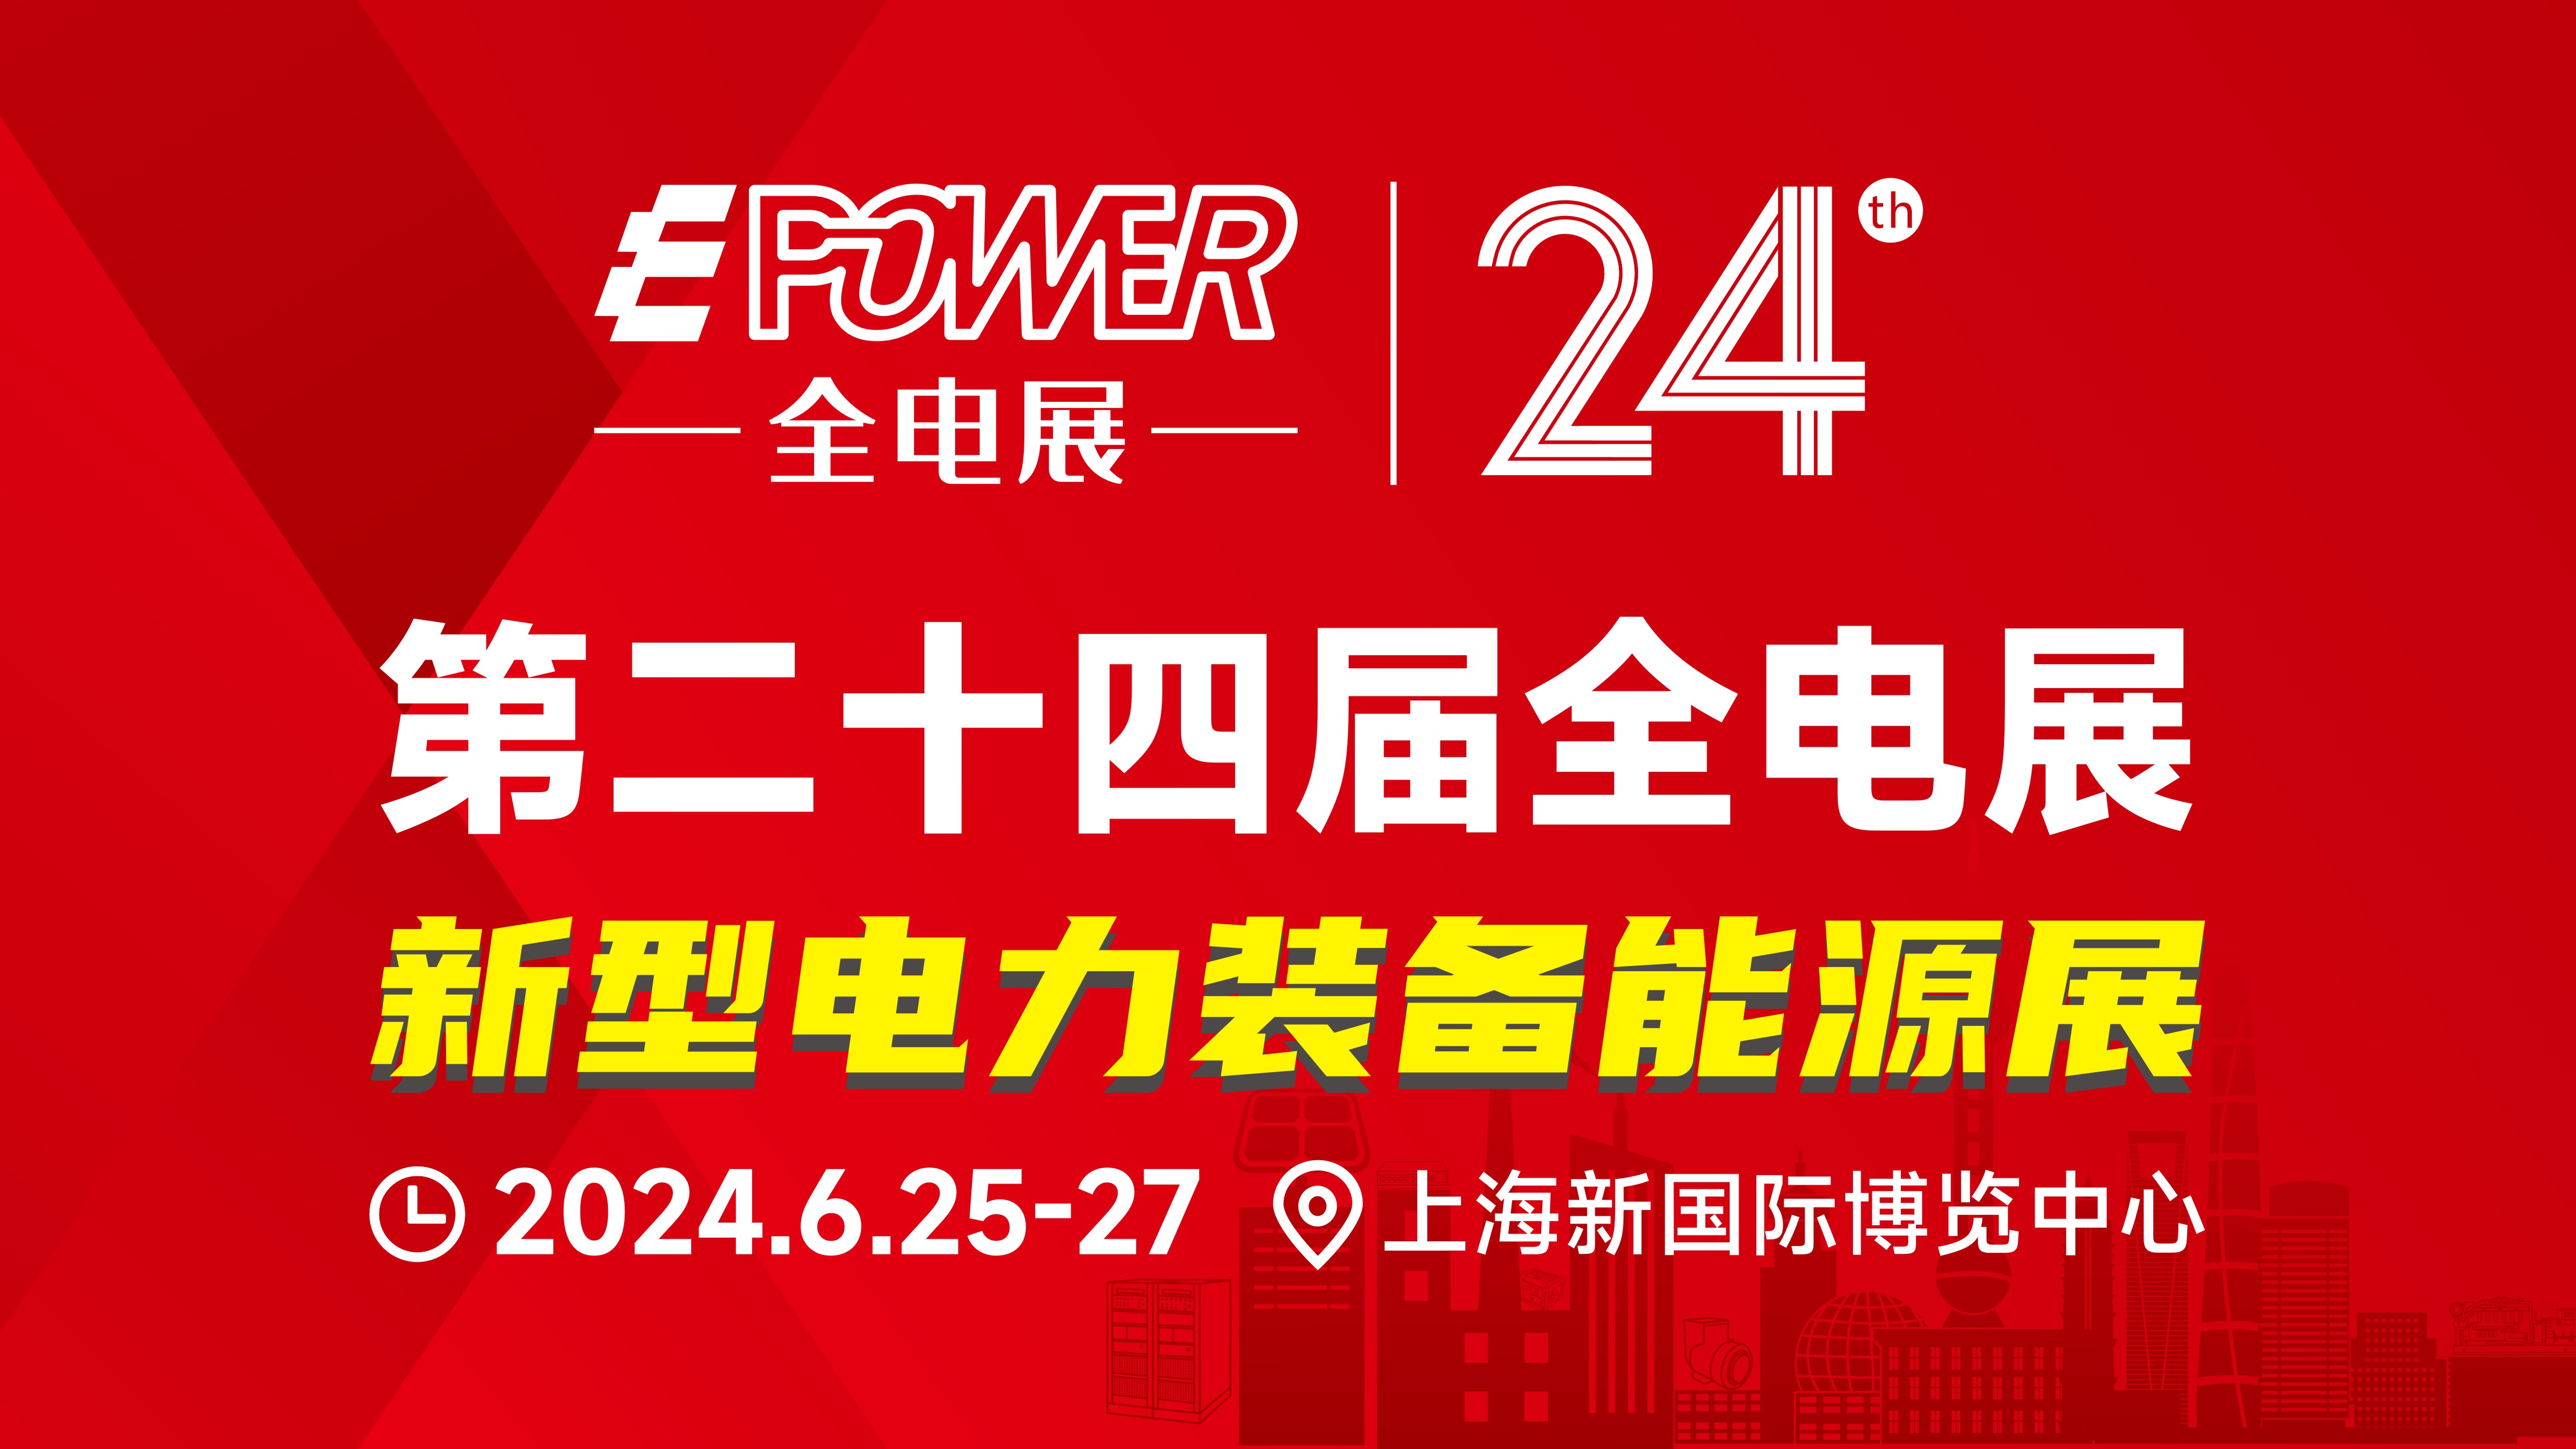 EPOWER第二十四届中国全电展